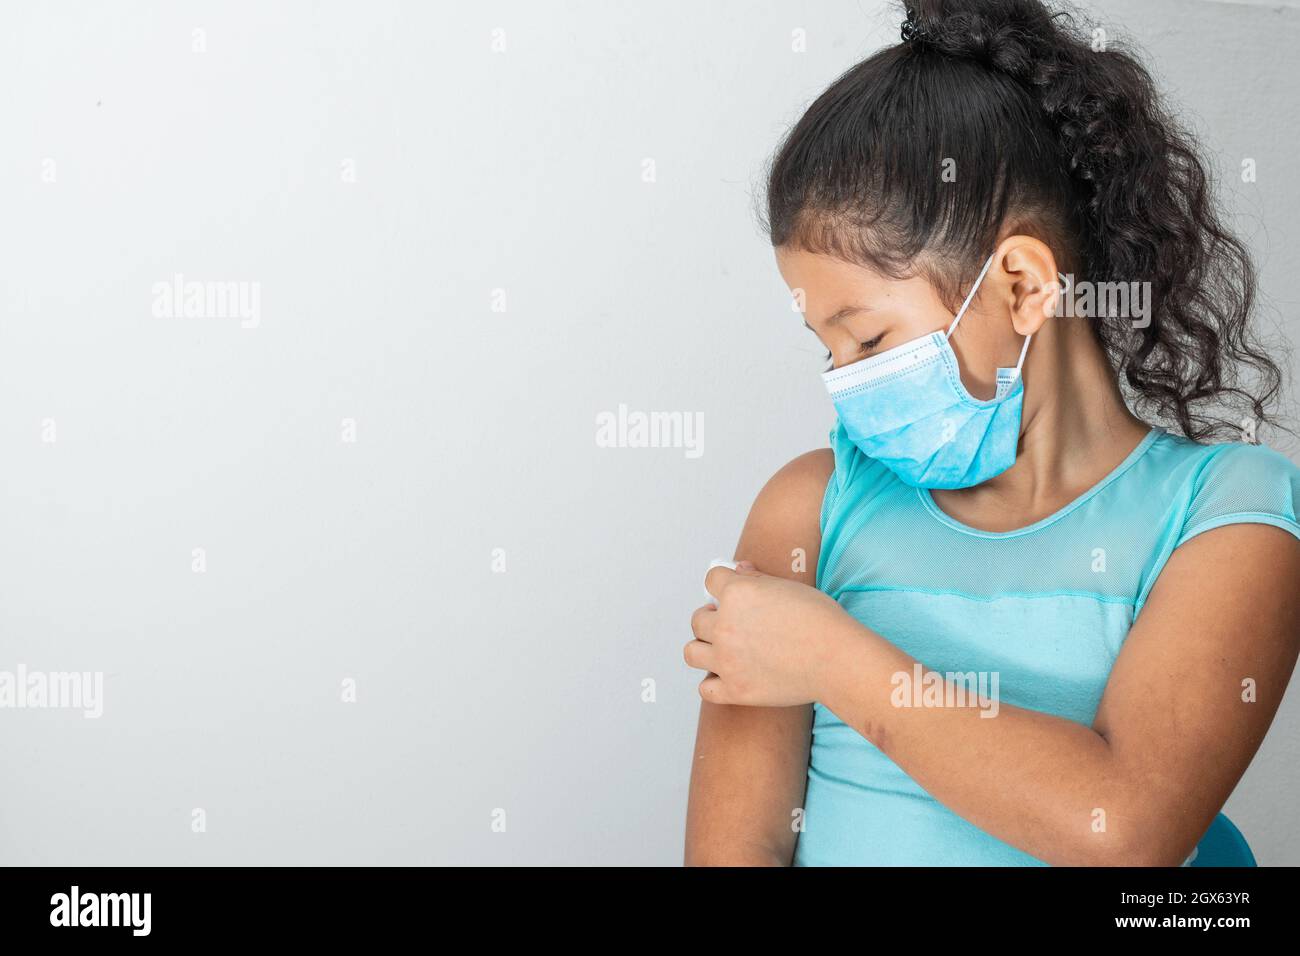 bambina che tiene un batuffolo di cotone sul braccio dopo aver ferito la pelle o aver iniettato il vaccino covid-19. Pronto soccorso. Medico, farmaceutico e sanitario Foto Stock